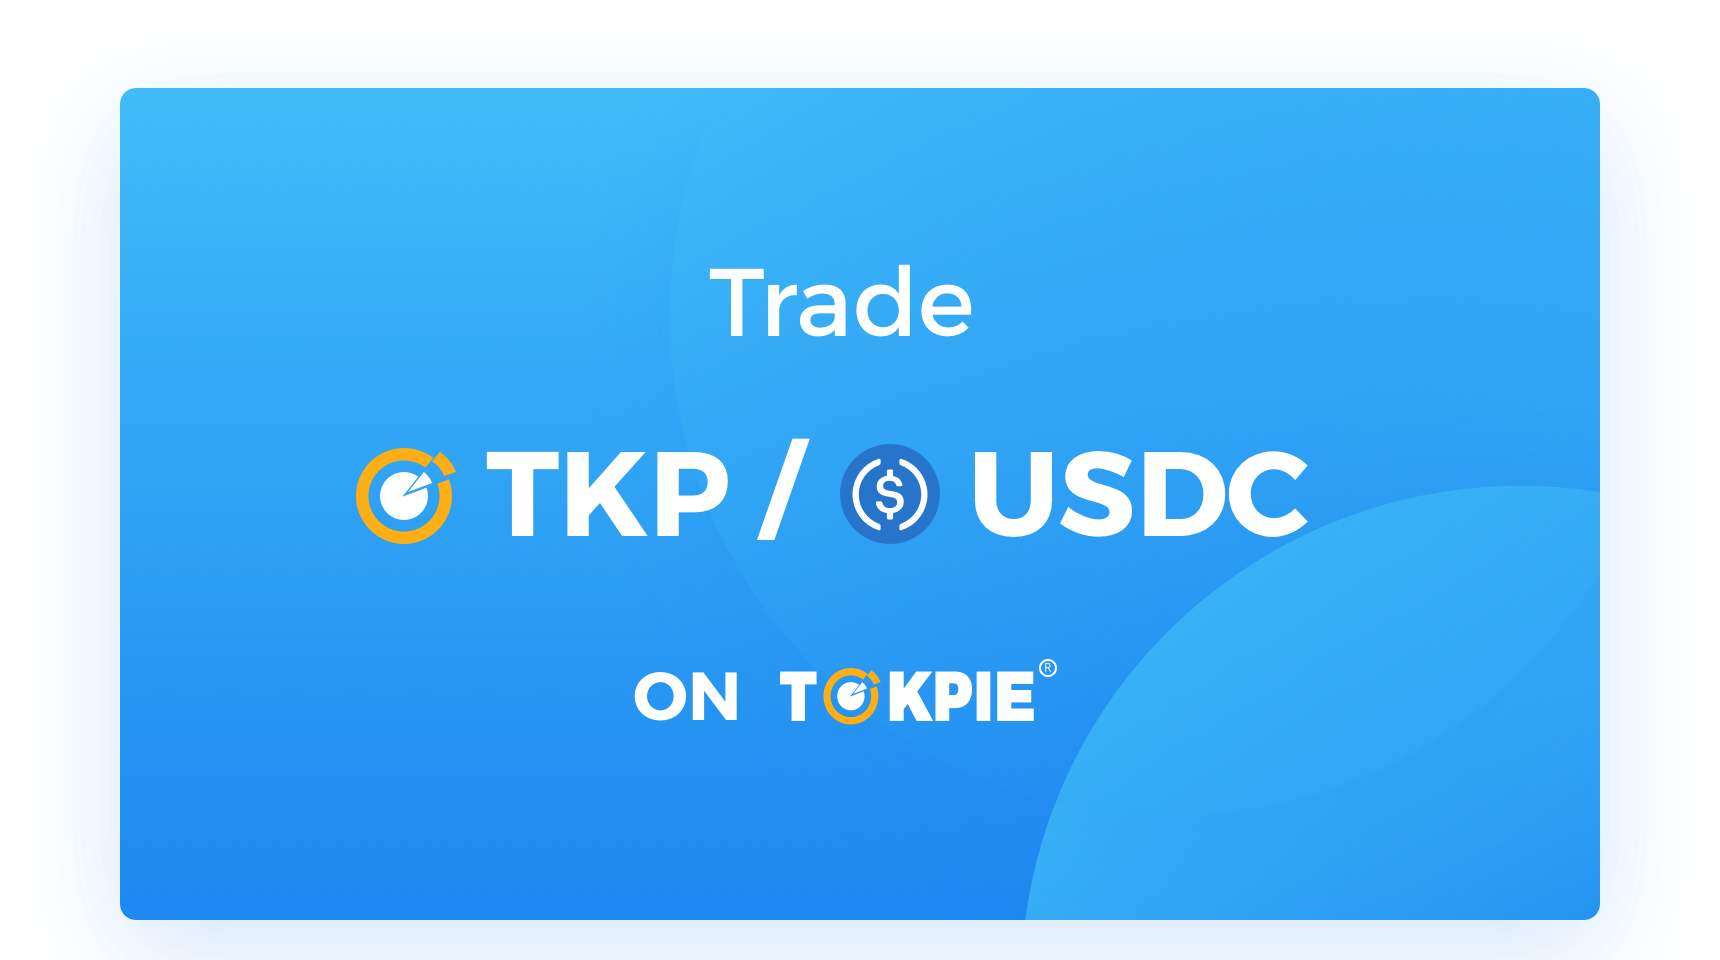 TOKPIE adds TKP/USDC - Tokpie Blog